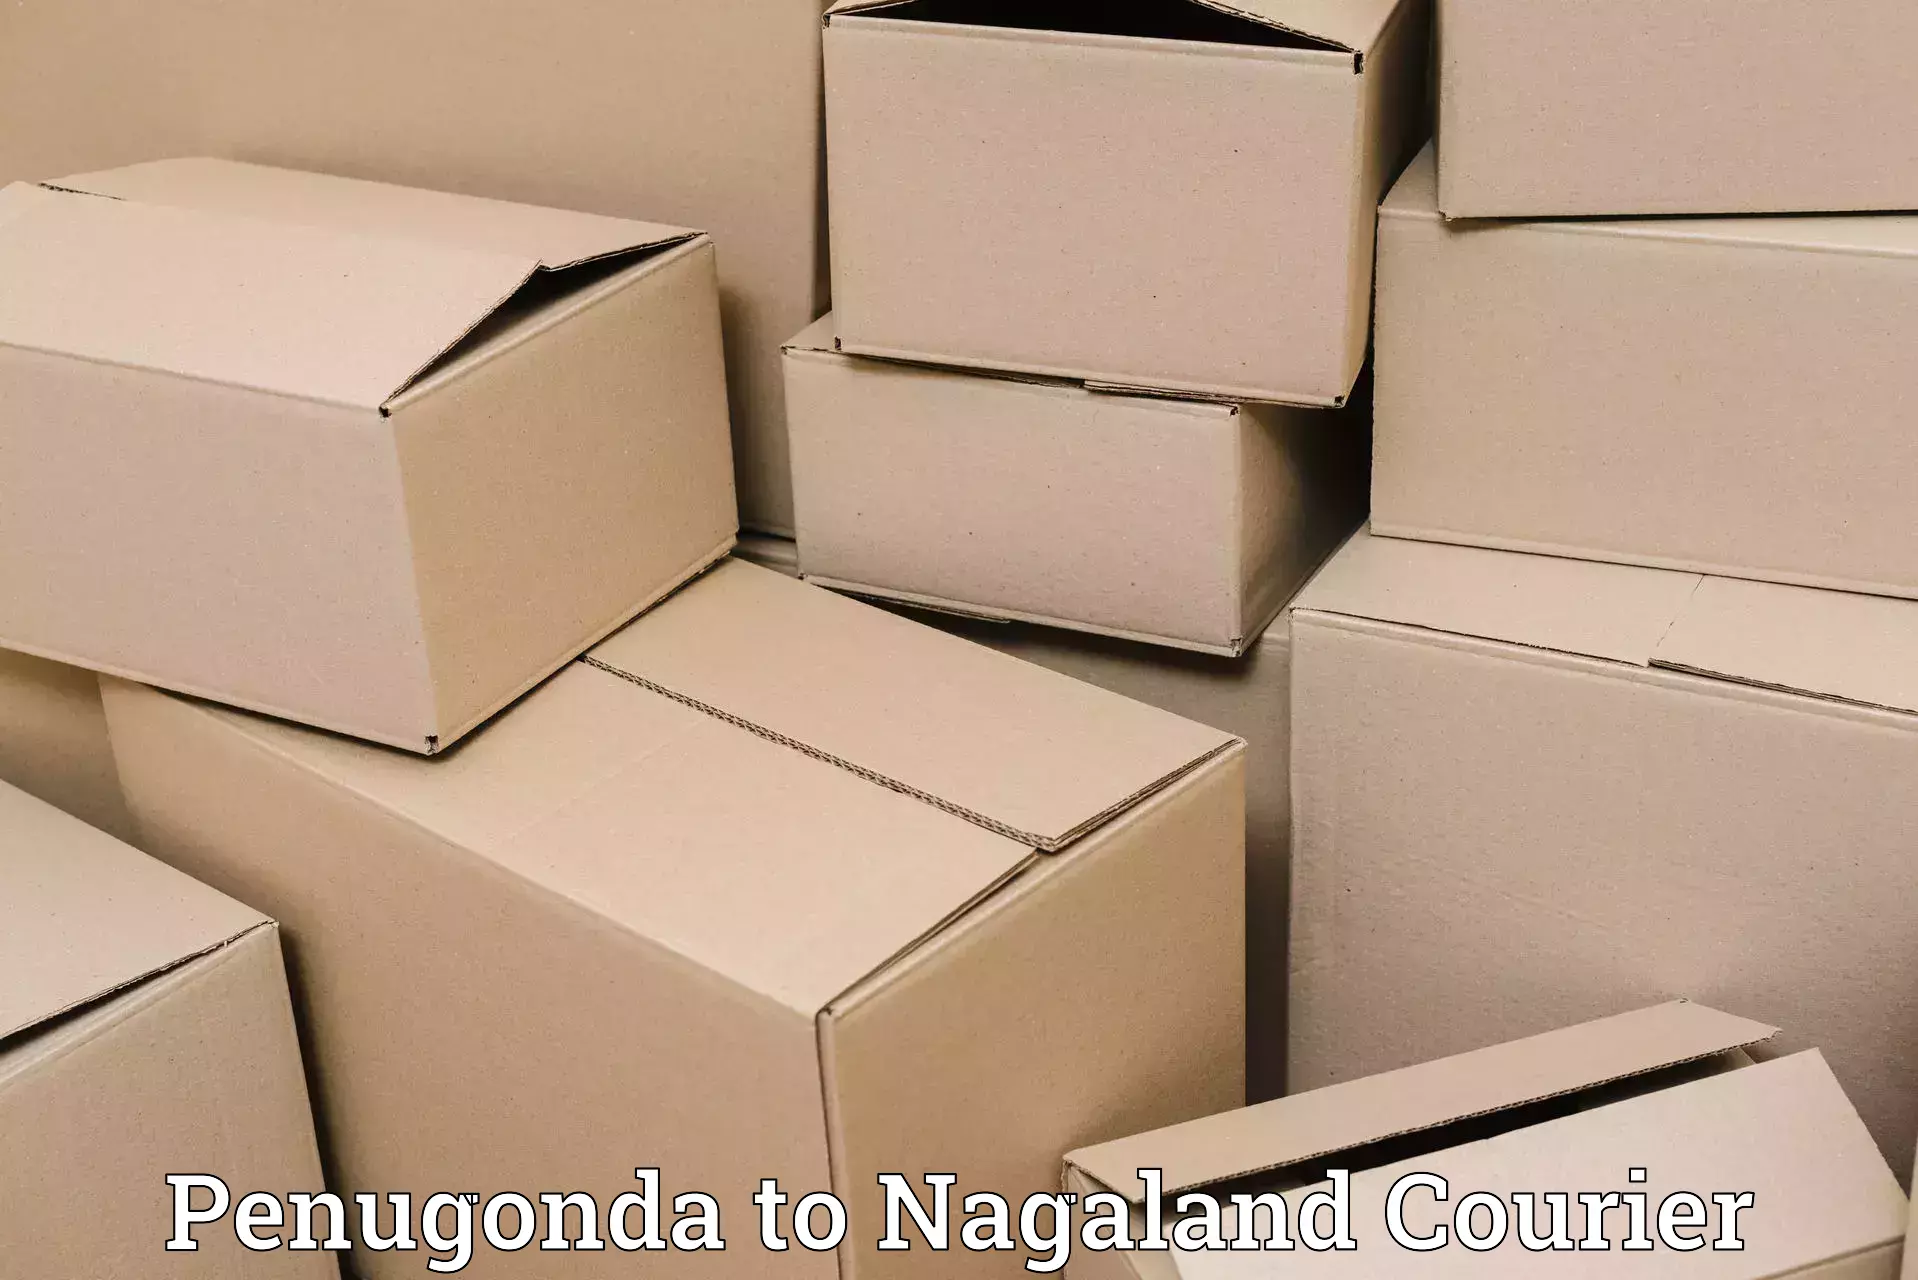 High-capacity shipping options Penugonda to Nagaland